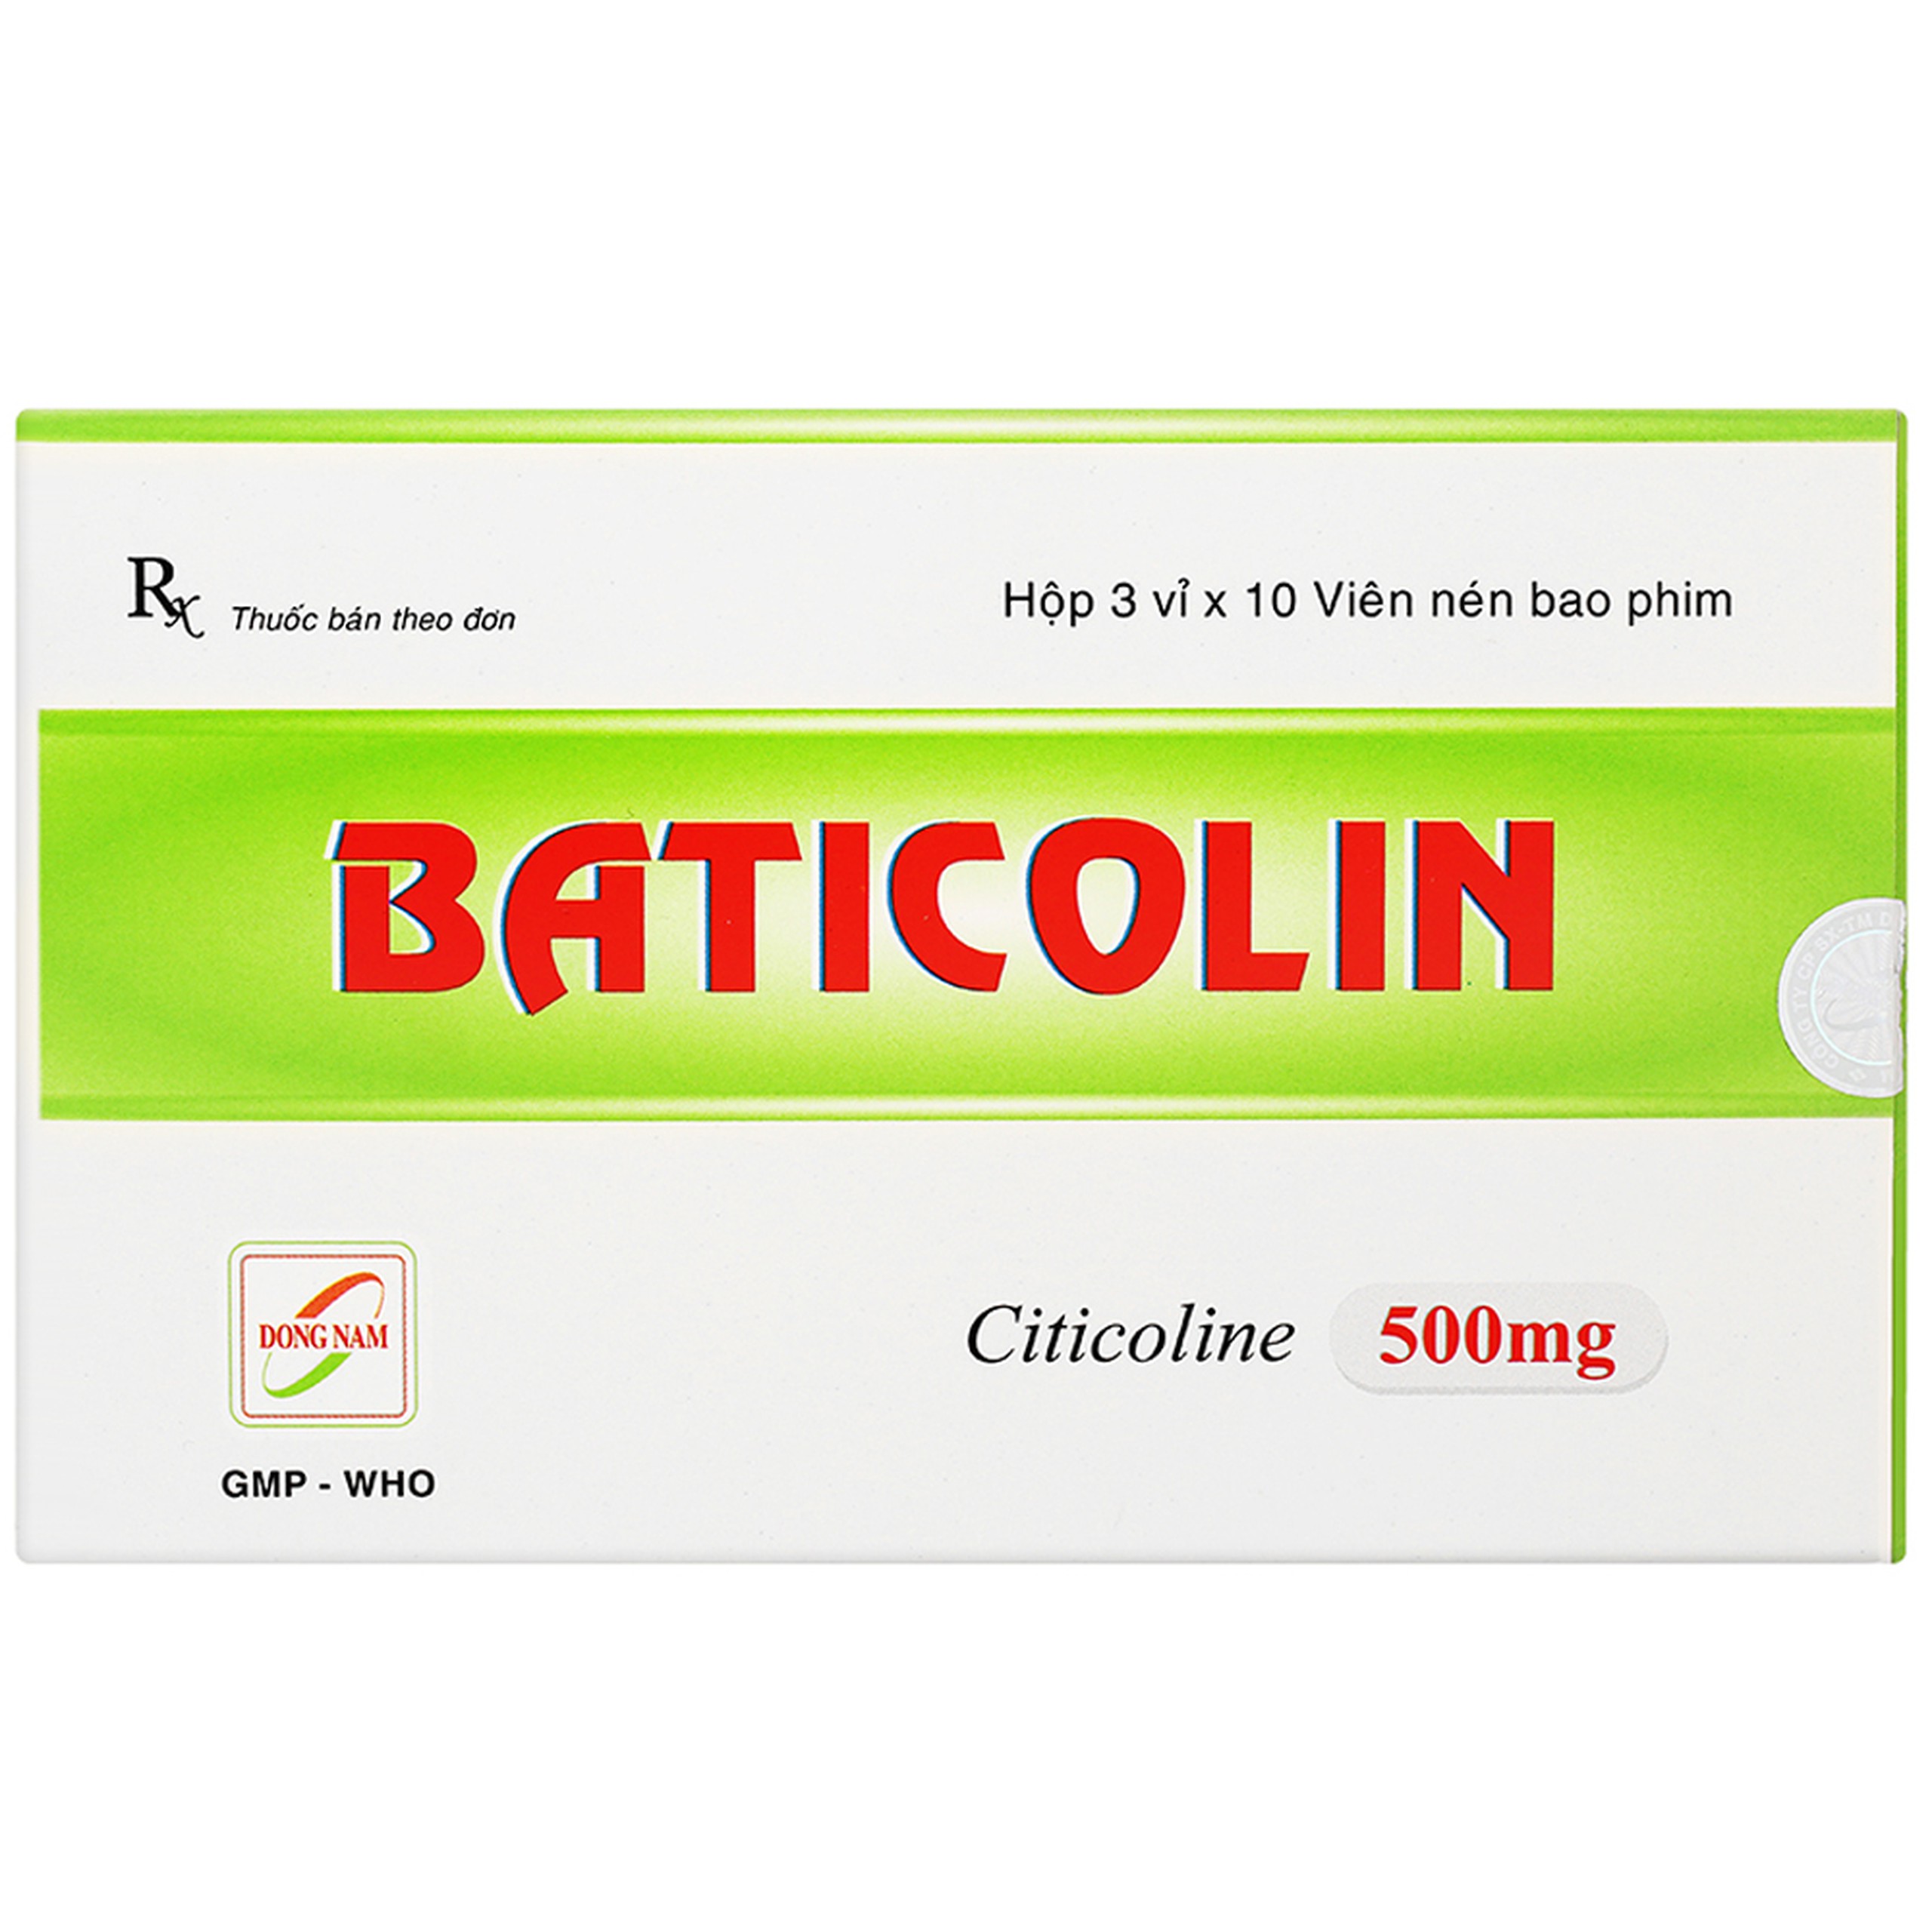 Thuốc Baticolin 500mg Dược Đông Nam trị bệnh mạch máu não, chấn thương sọ não (3 vỉ x 10 viên)